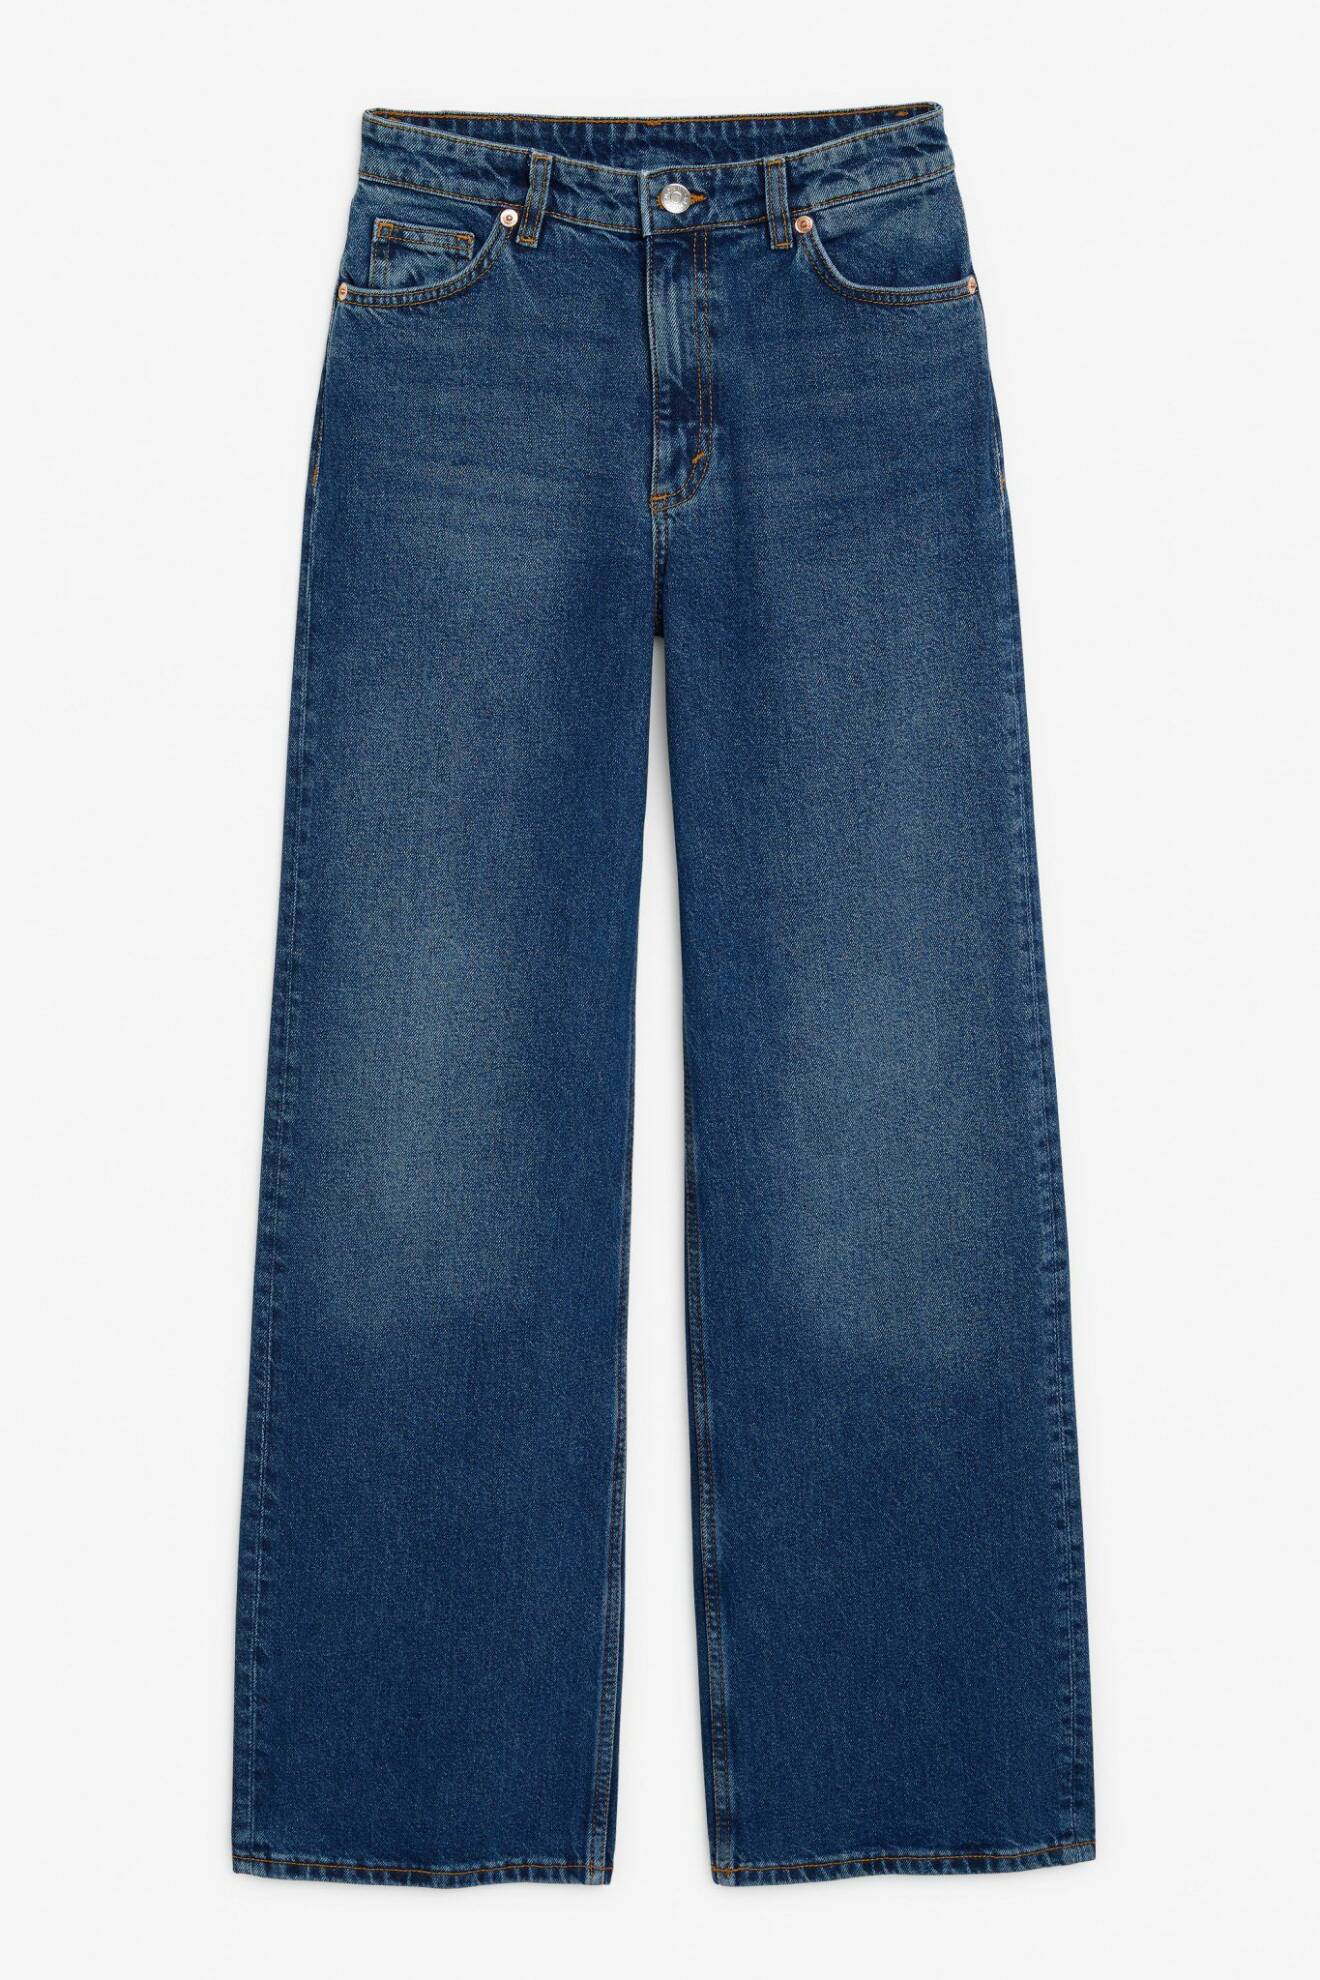 Vida jeans från Monki i en mörkblå tvätt.